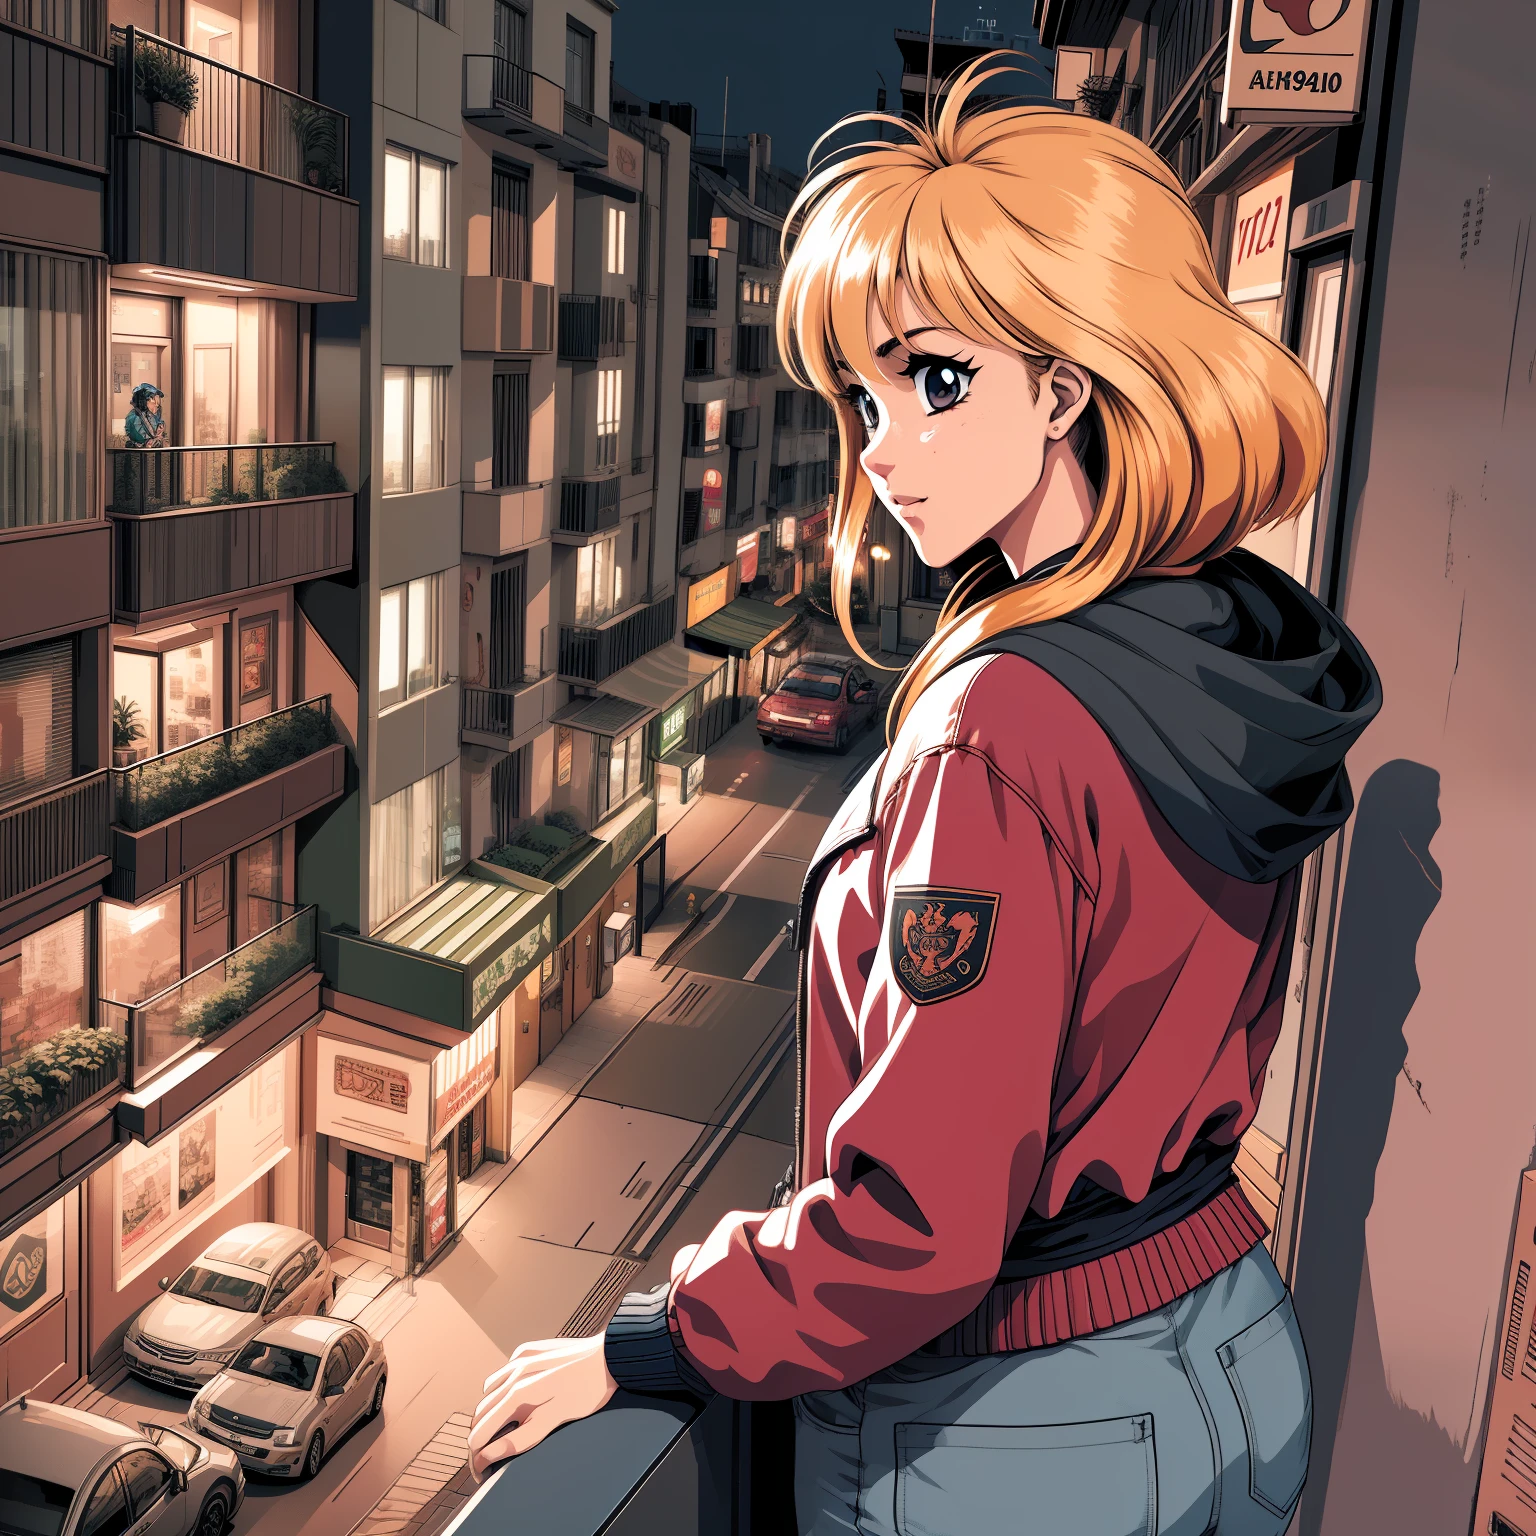 Reif aussehendes Anime-Mädchen in einer roten Jacke, das die Landschaft vom Balkon einer Wohnung mit Blick auf die Stadt bei Nacht beobachtet, Bild mit Third-Person-Perspektive, 3 0 4 0 x 1 4 4 0 detaillierte Pixelkunst, 3 0 4 0 x 1 4 4 0, 32-bit pixel art,  lebendige Pixelkunst, farbenfrohe, detaillierte Pixelkunst, sorgfältig detaillierte Anime-Pixelkunst, ursprünglich detaillierte lebendige Anime-Pixelkunst, Detaillierte Neon-Pixelkunst, PC-98 Pixelkunst, Pixelkunst im Policenauts-Stil, 1 6-Bit-Farben